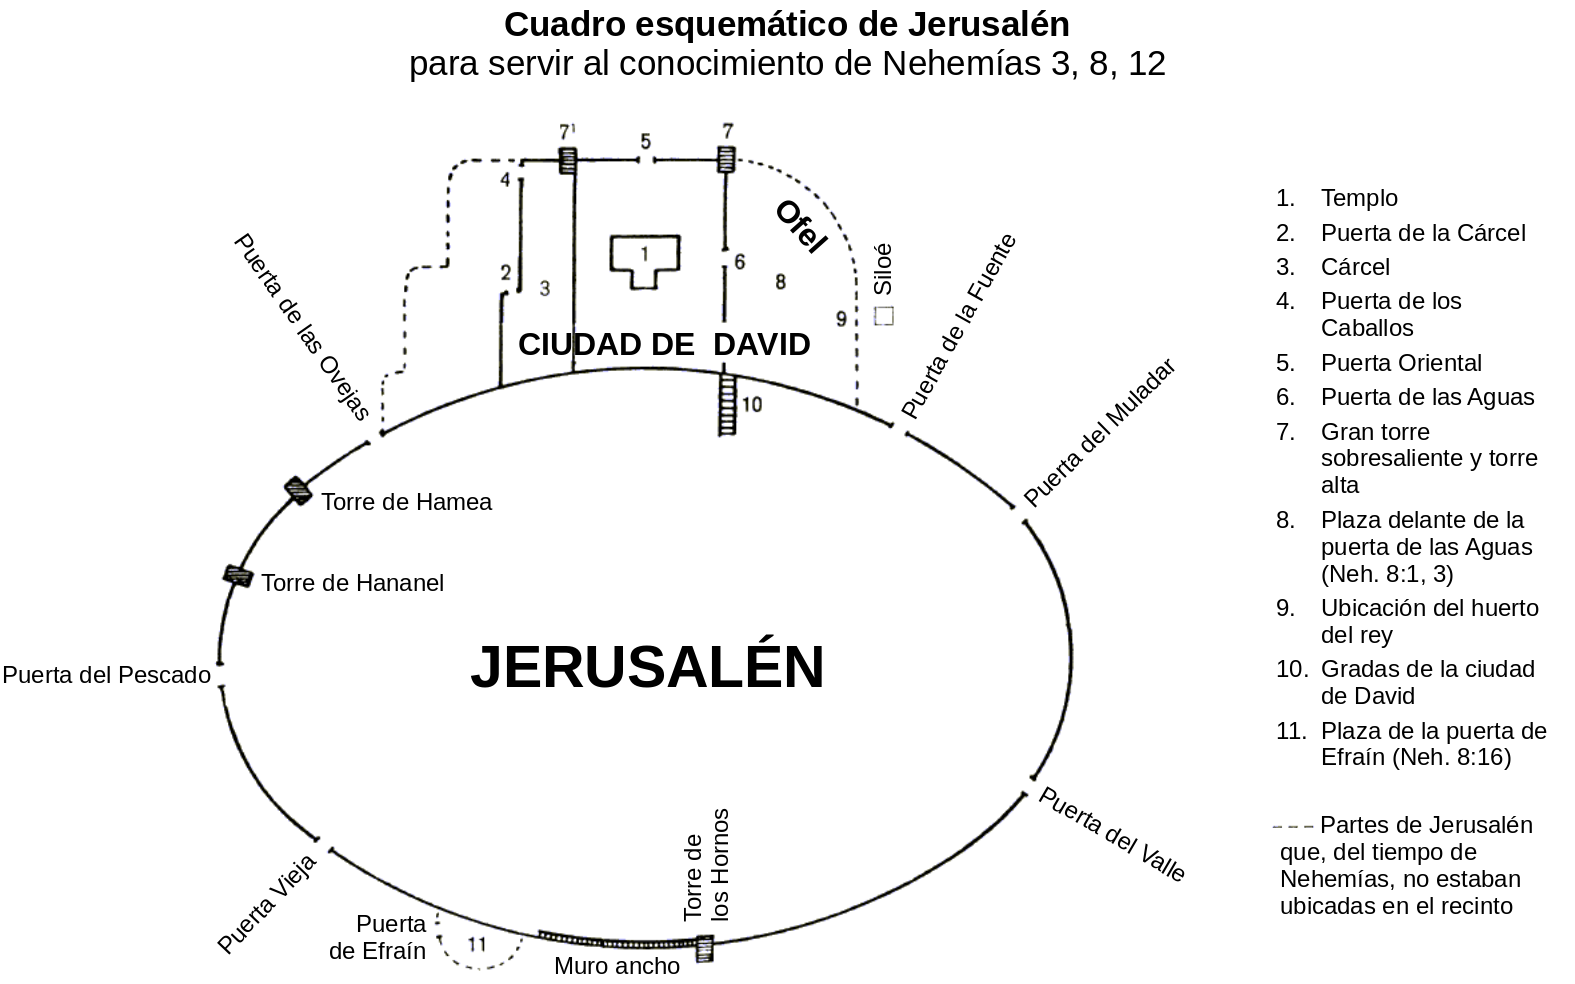 Cuadro esquemático de Jerusalén para servir al conocimiento de Nehemías 3, 8, 12